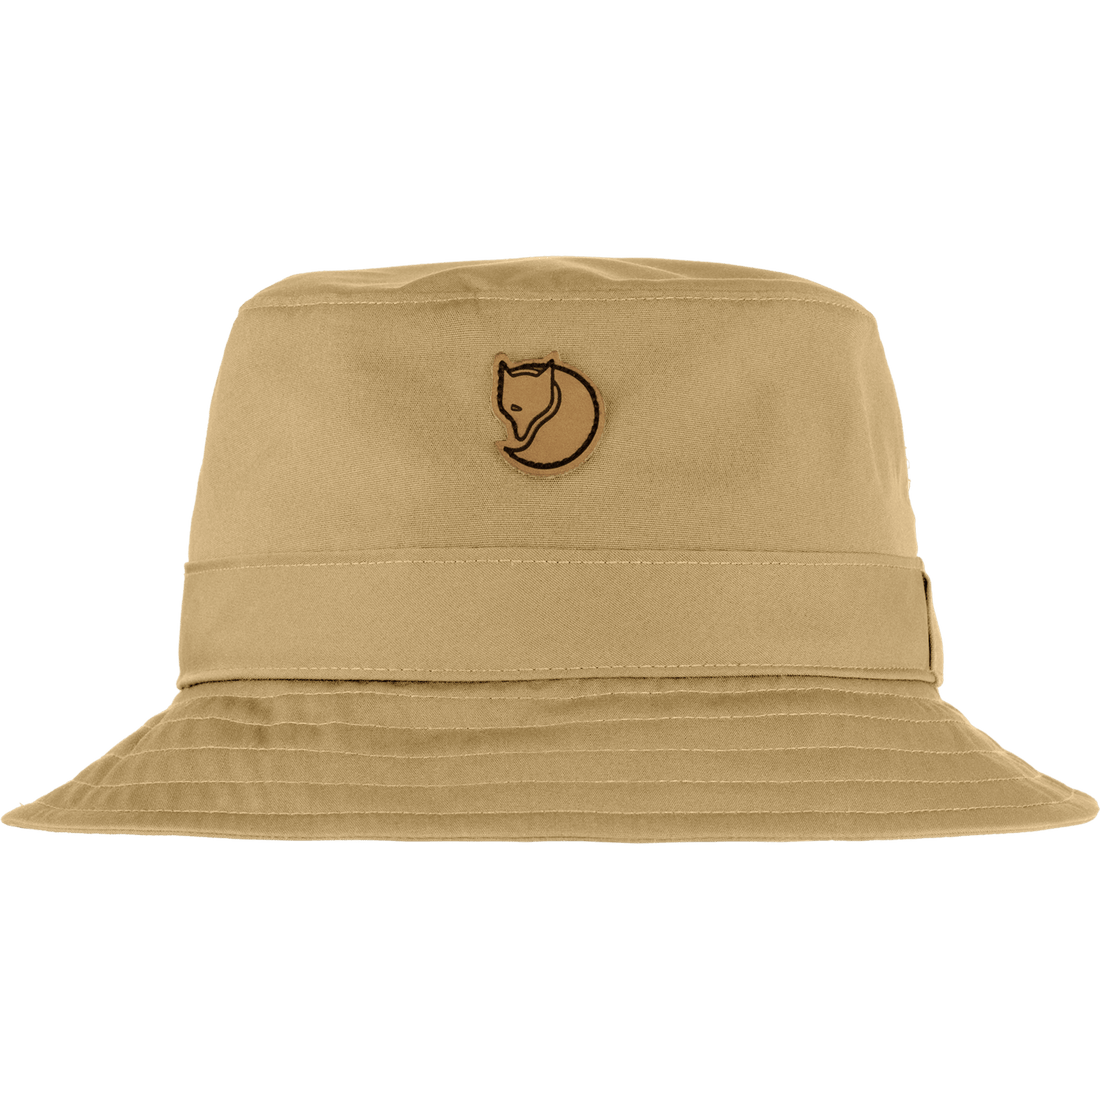 Kiruna Hat